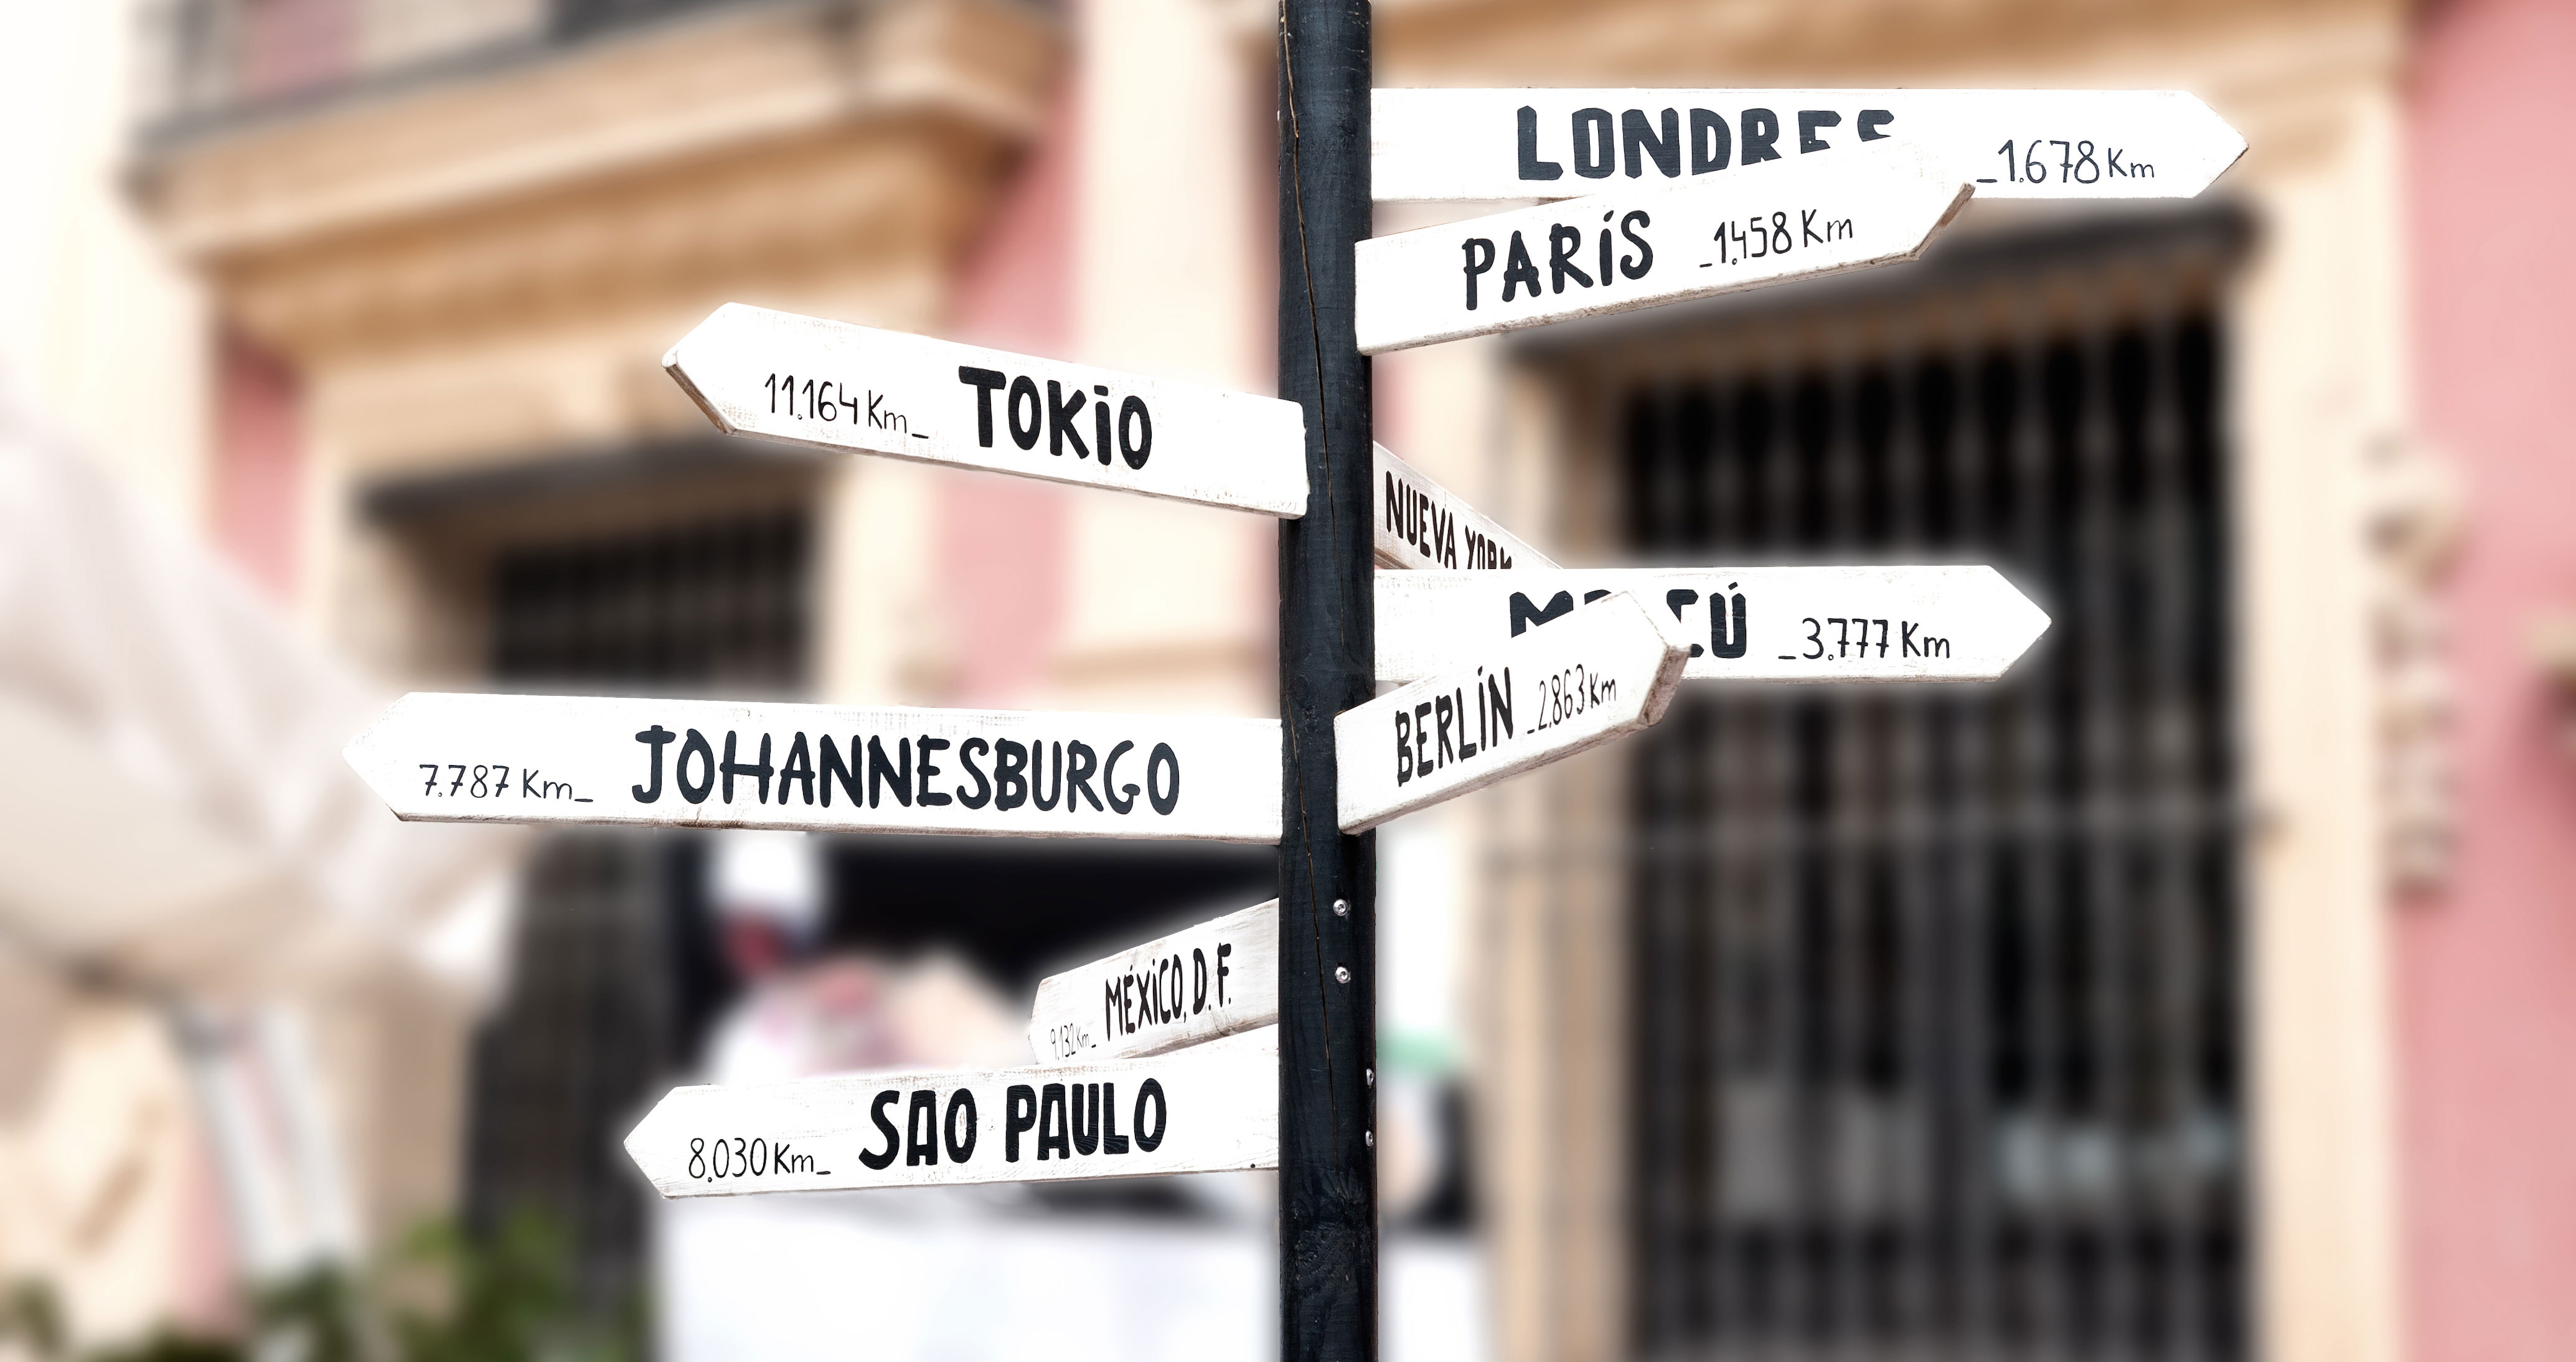 Auf dem Bild sind 2 nebeneinander stehende Wegweiser zu sehen, an denen Richtungsschilder zu verschiedenen europäischen Hauptstädten angebracht sind (unter anderem Berlin, Paris, Amsterdam, Helsiniki, Kopenhagen, Dublin, Stockholm, Madrid, Lissabon).